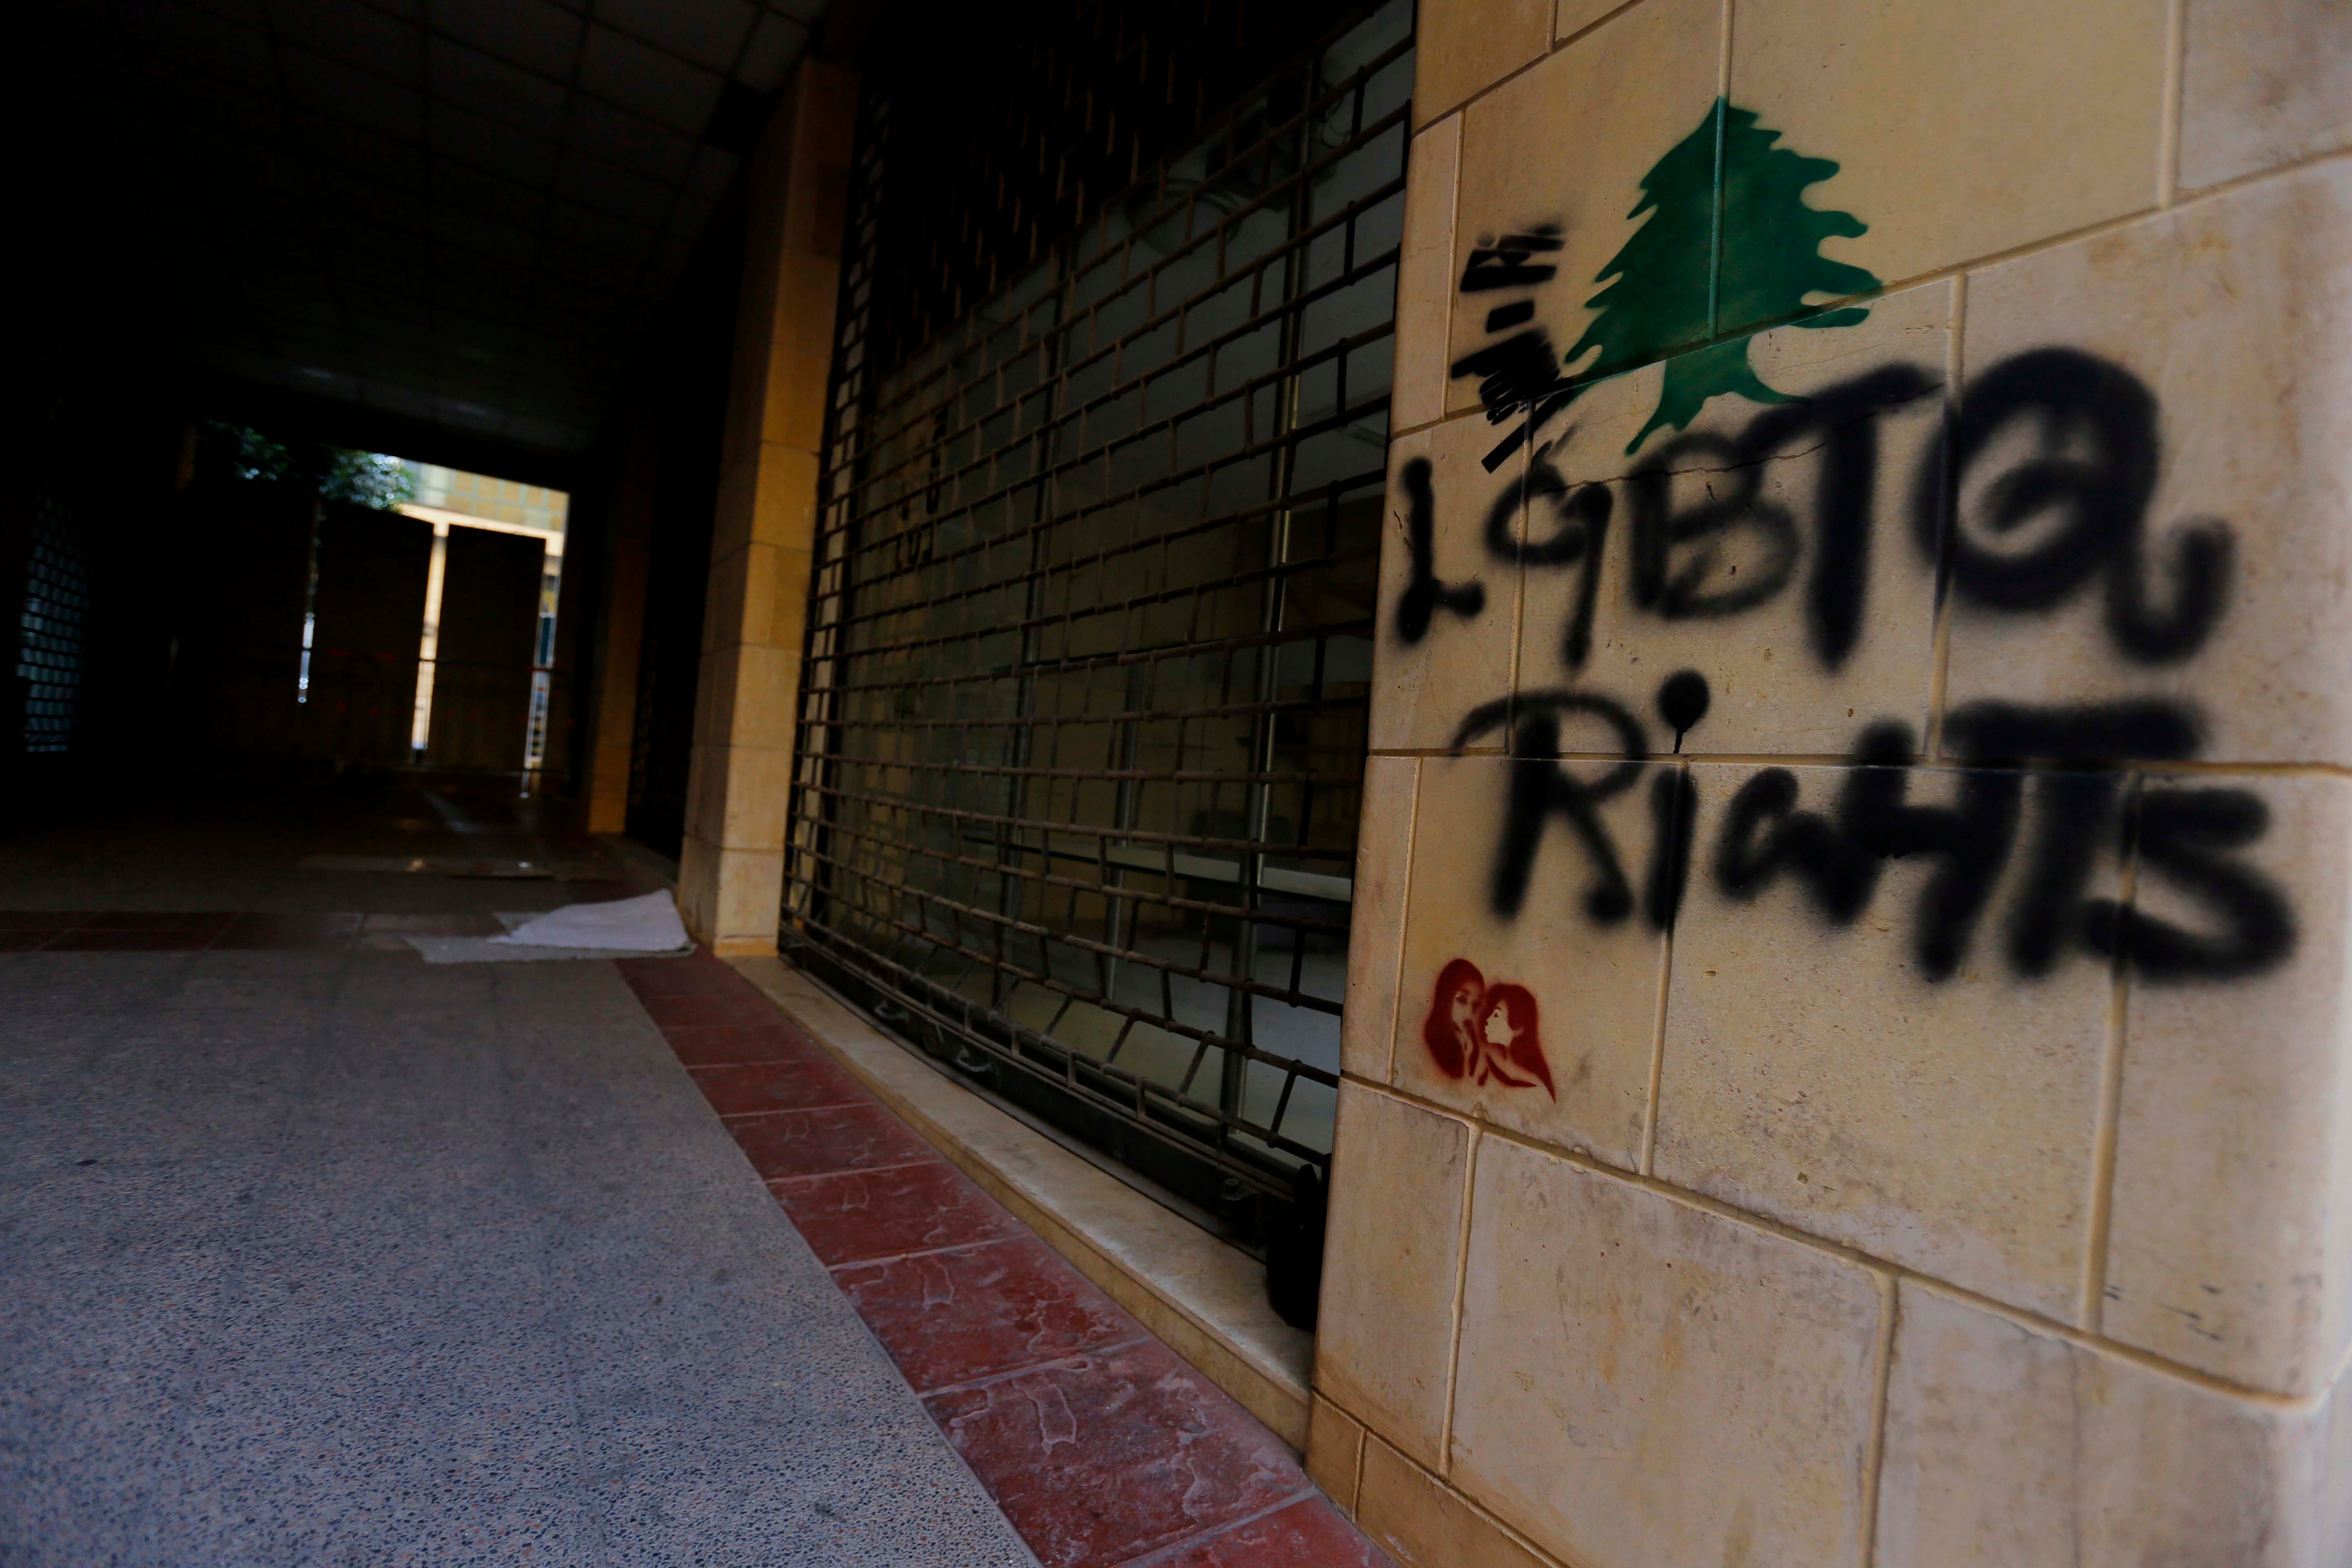 عبارة "مجتمع الميم" بالإنغليزية مكتوبة على الحائط في موقع احتجاجات في وسط بيروت، 22 ديسمبر/كانون الأول 2019. 